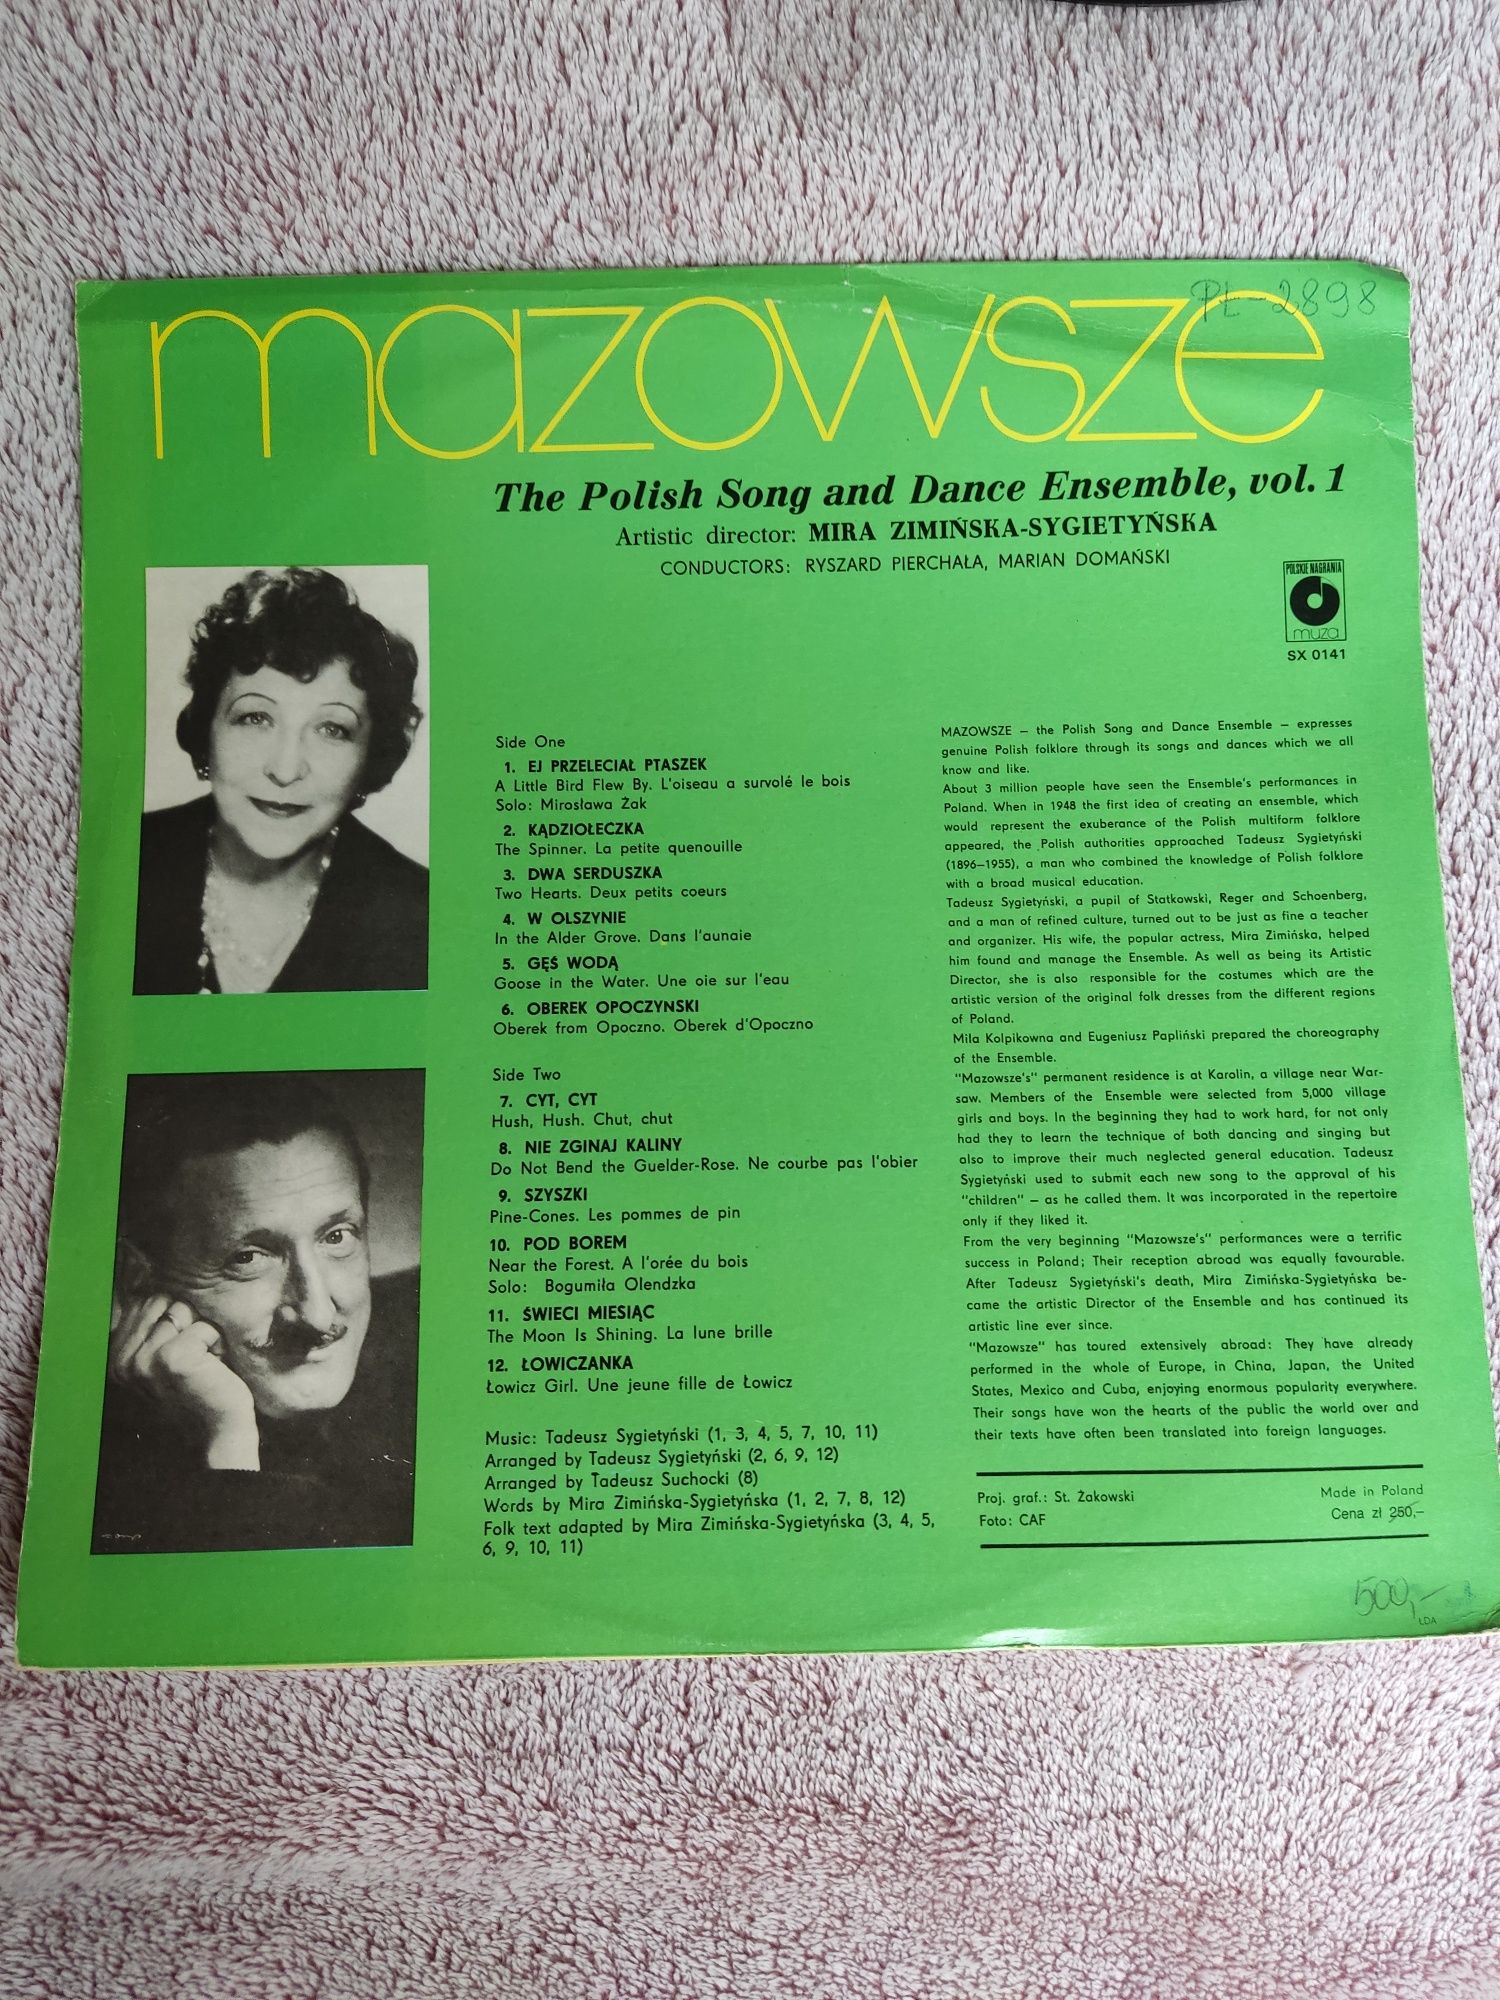 Płyta winylowa zespołu Mazowsze